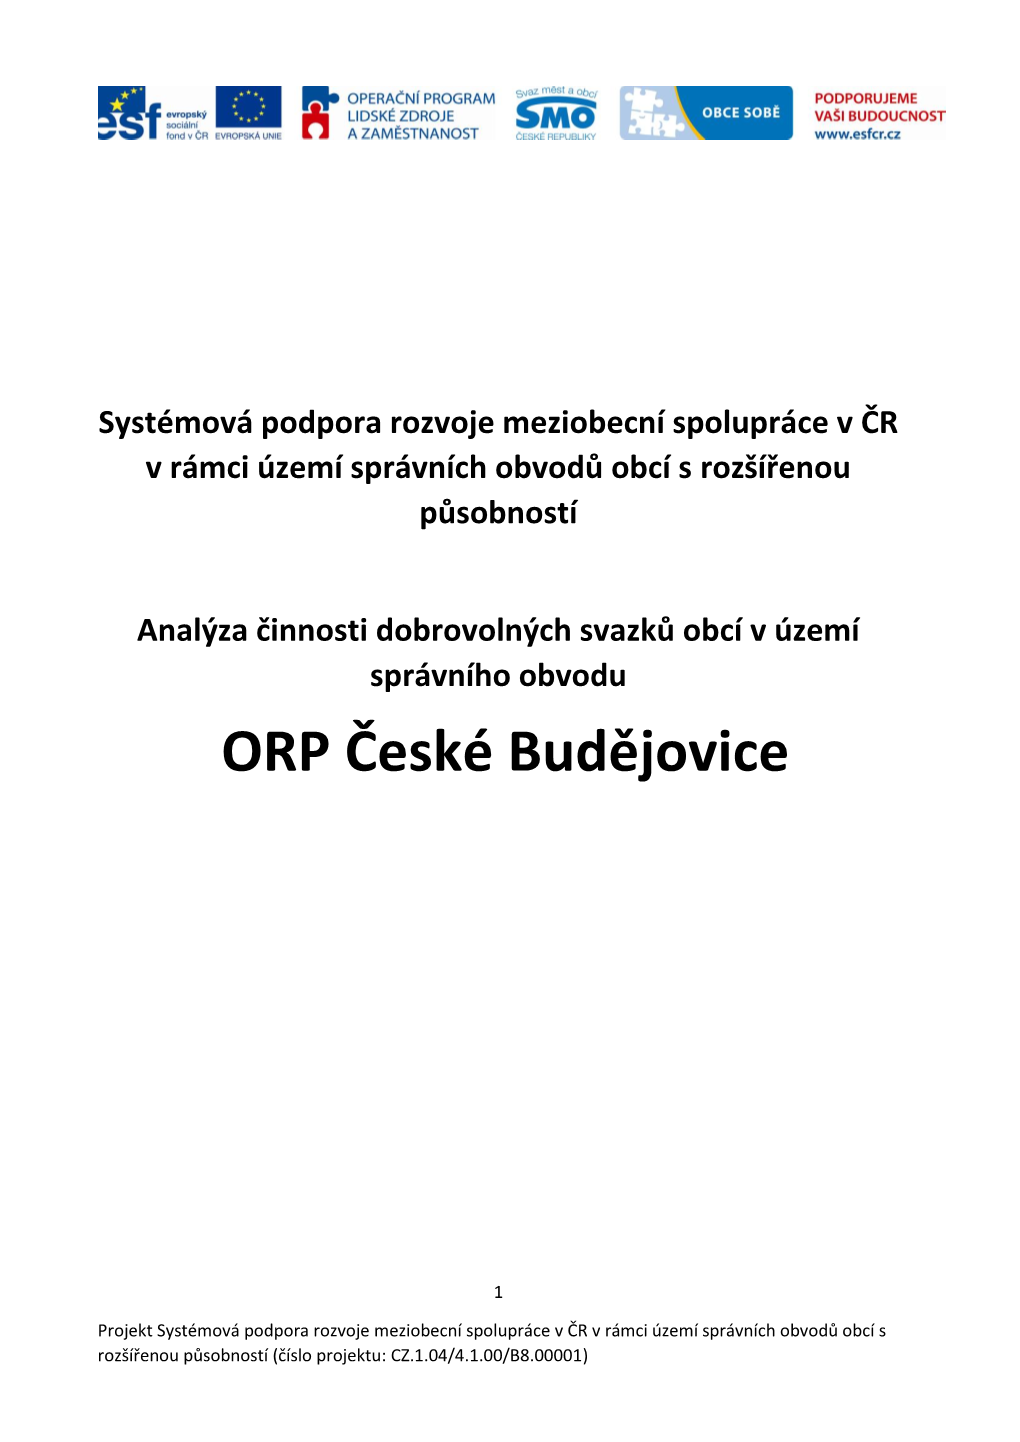 ORP České Budějovice